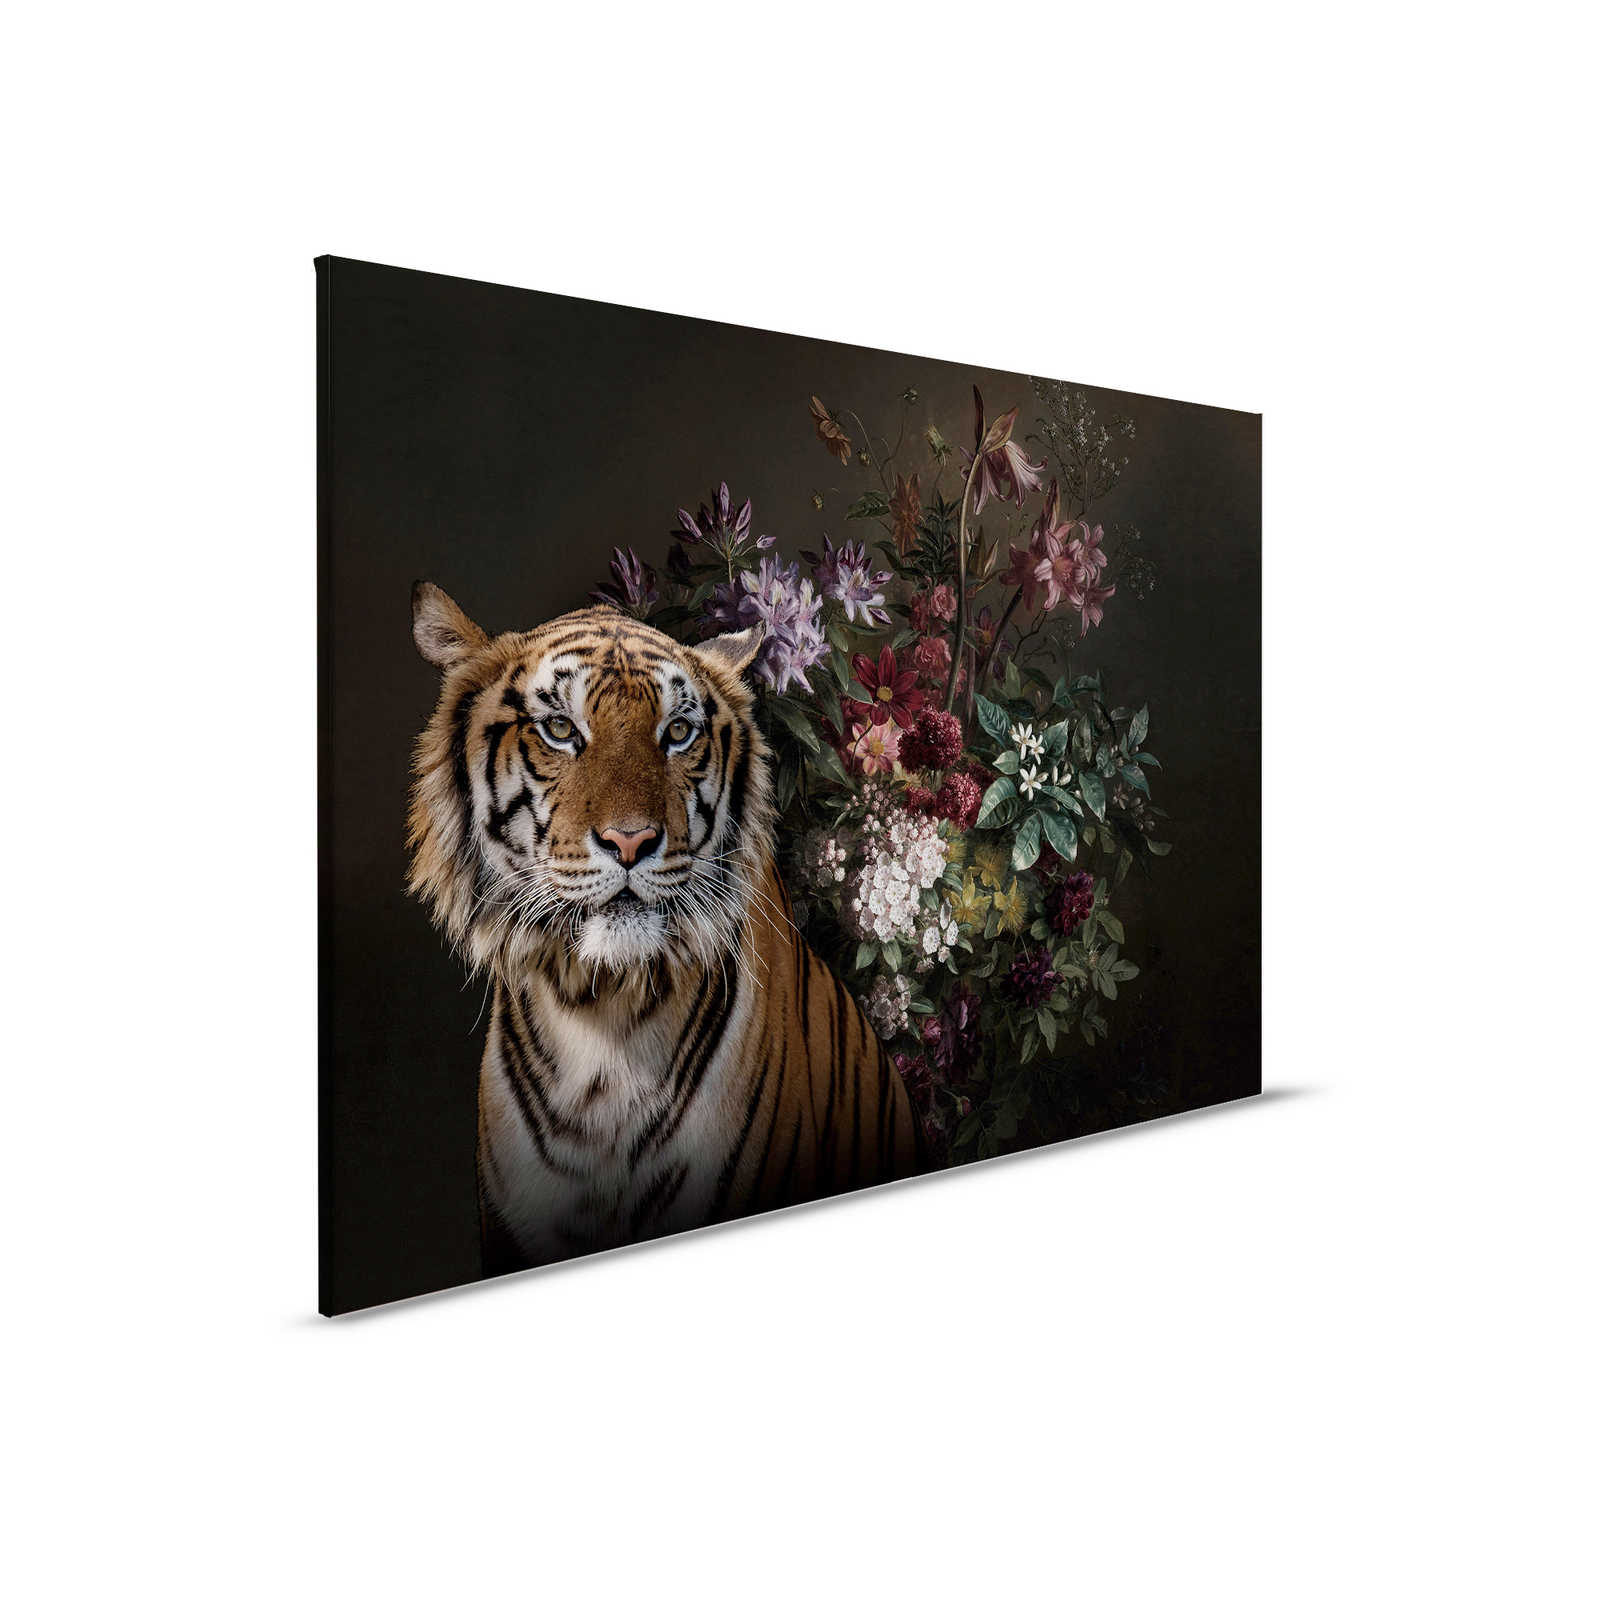 Toile Portrait de tigre avec fleurs - 0,90 m x 0,60 m
